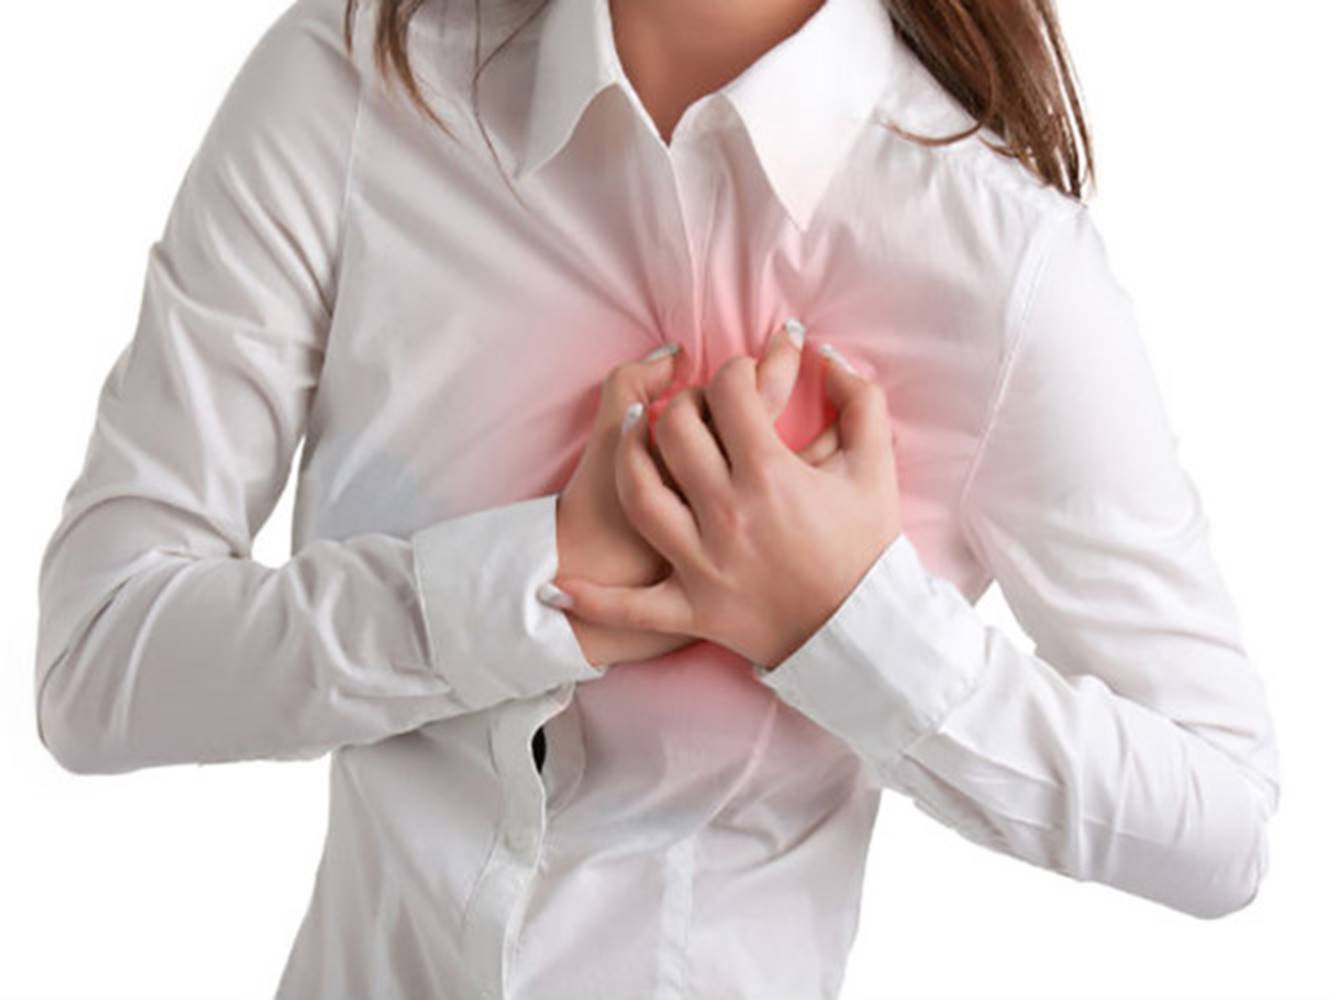 Nguyên nhân gây bệnh u trong tim có thể bạn đang gặp phải - Ảnh 1.